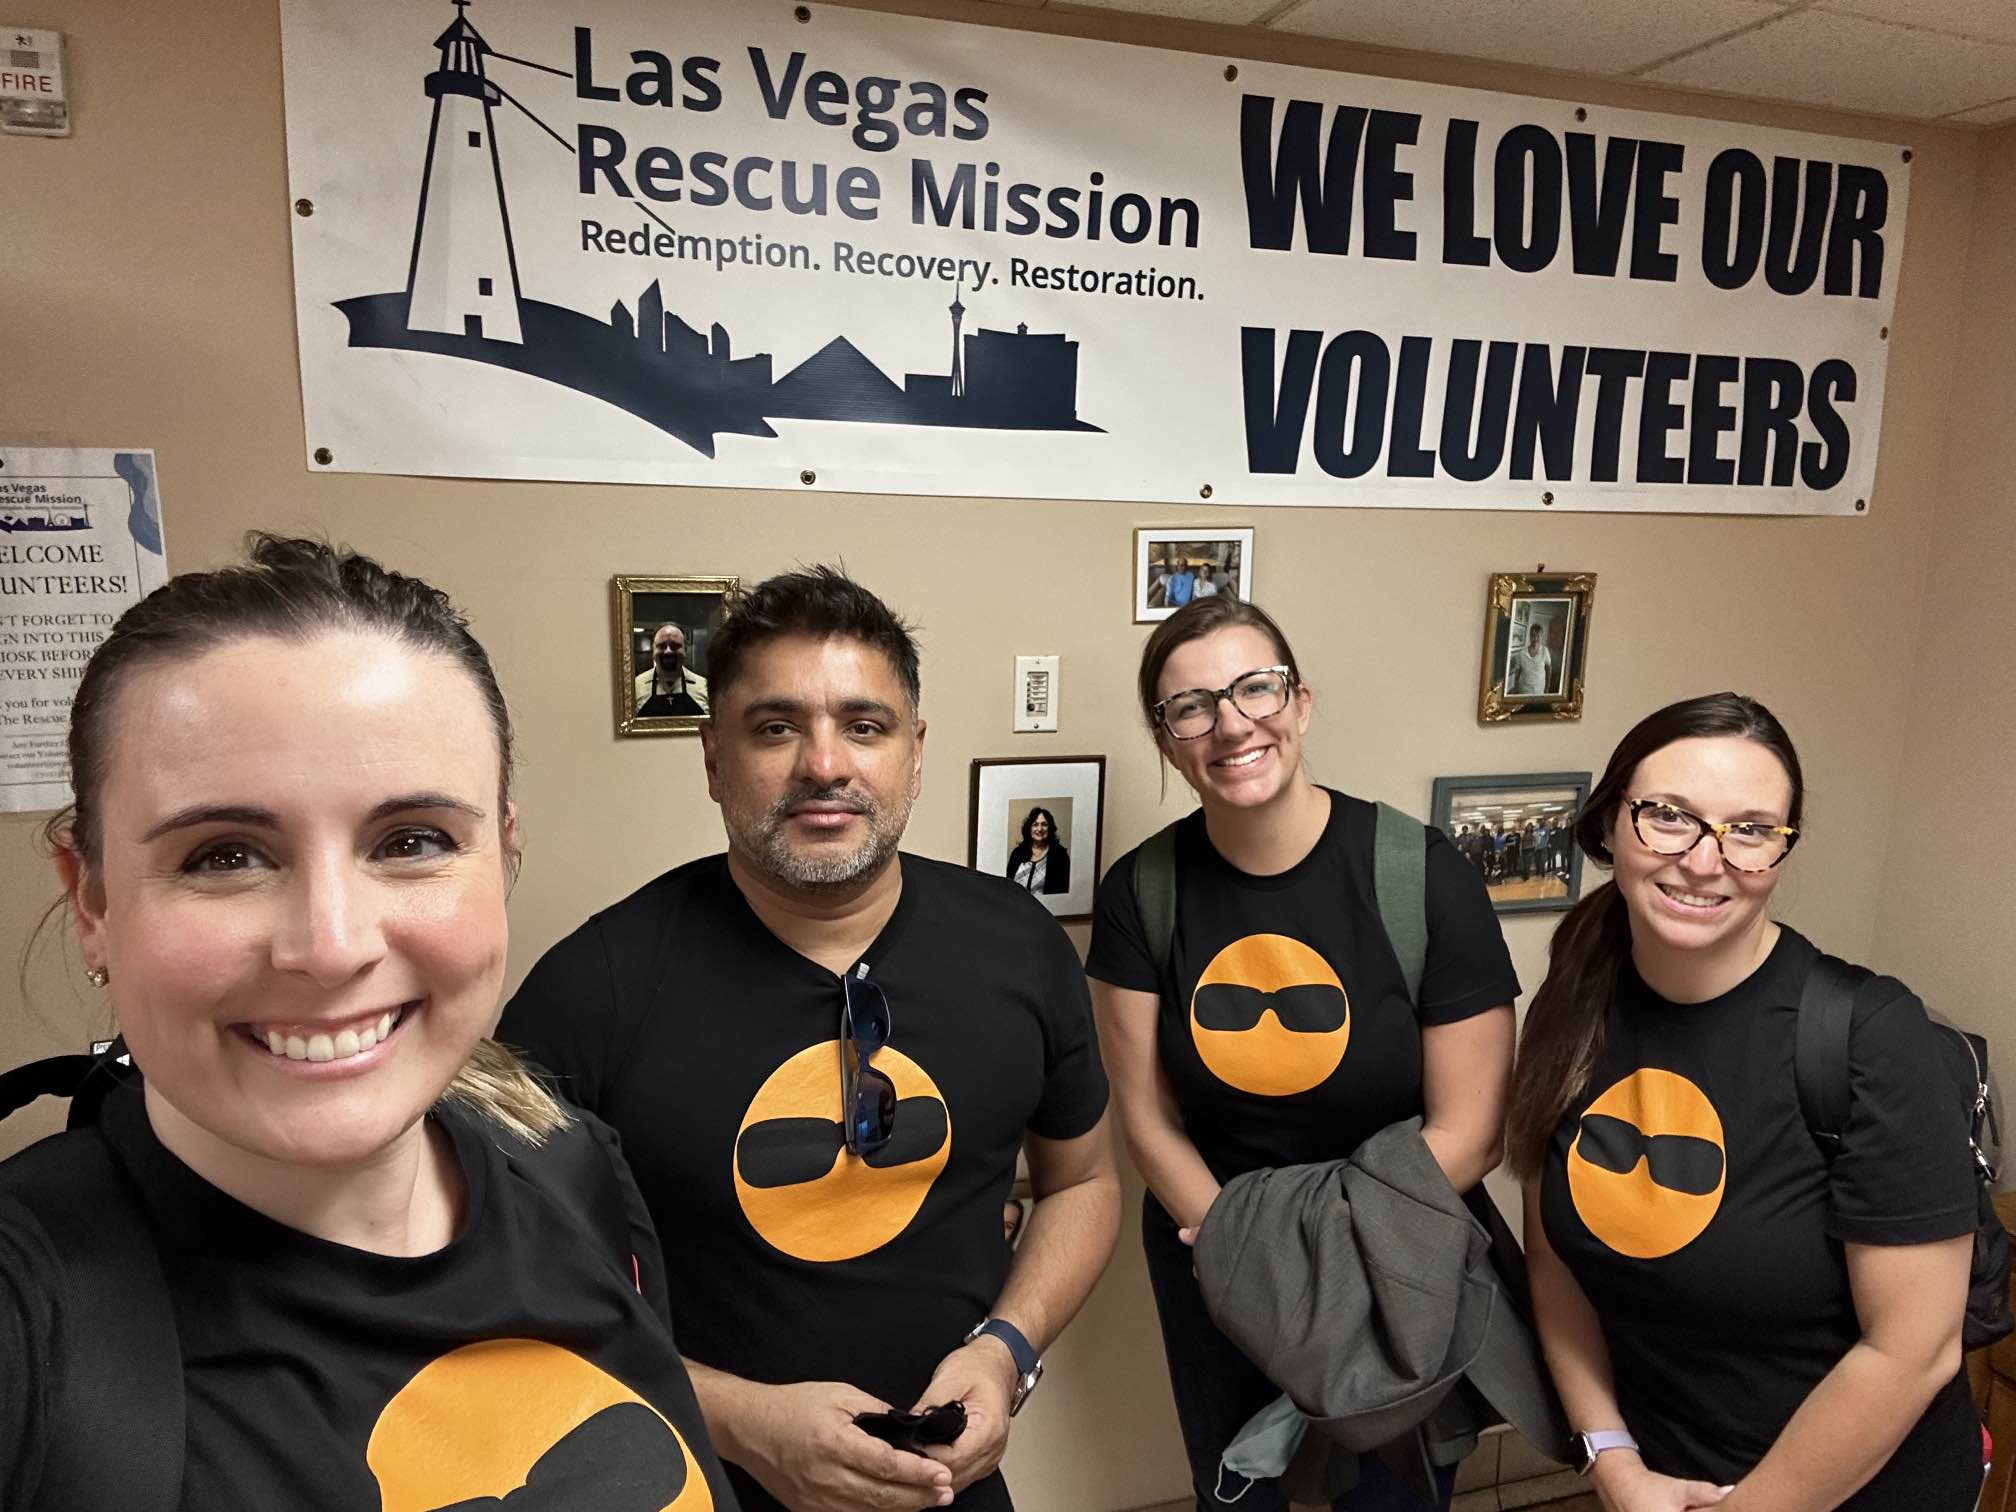 Las Vegas Rescue Mission